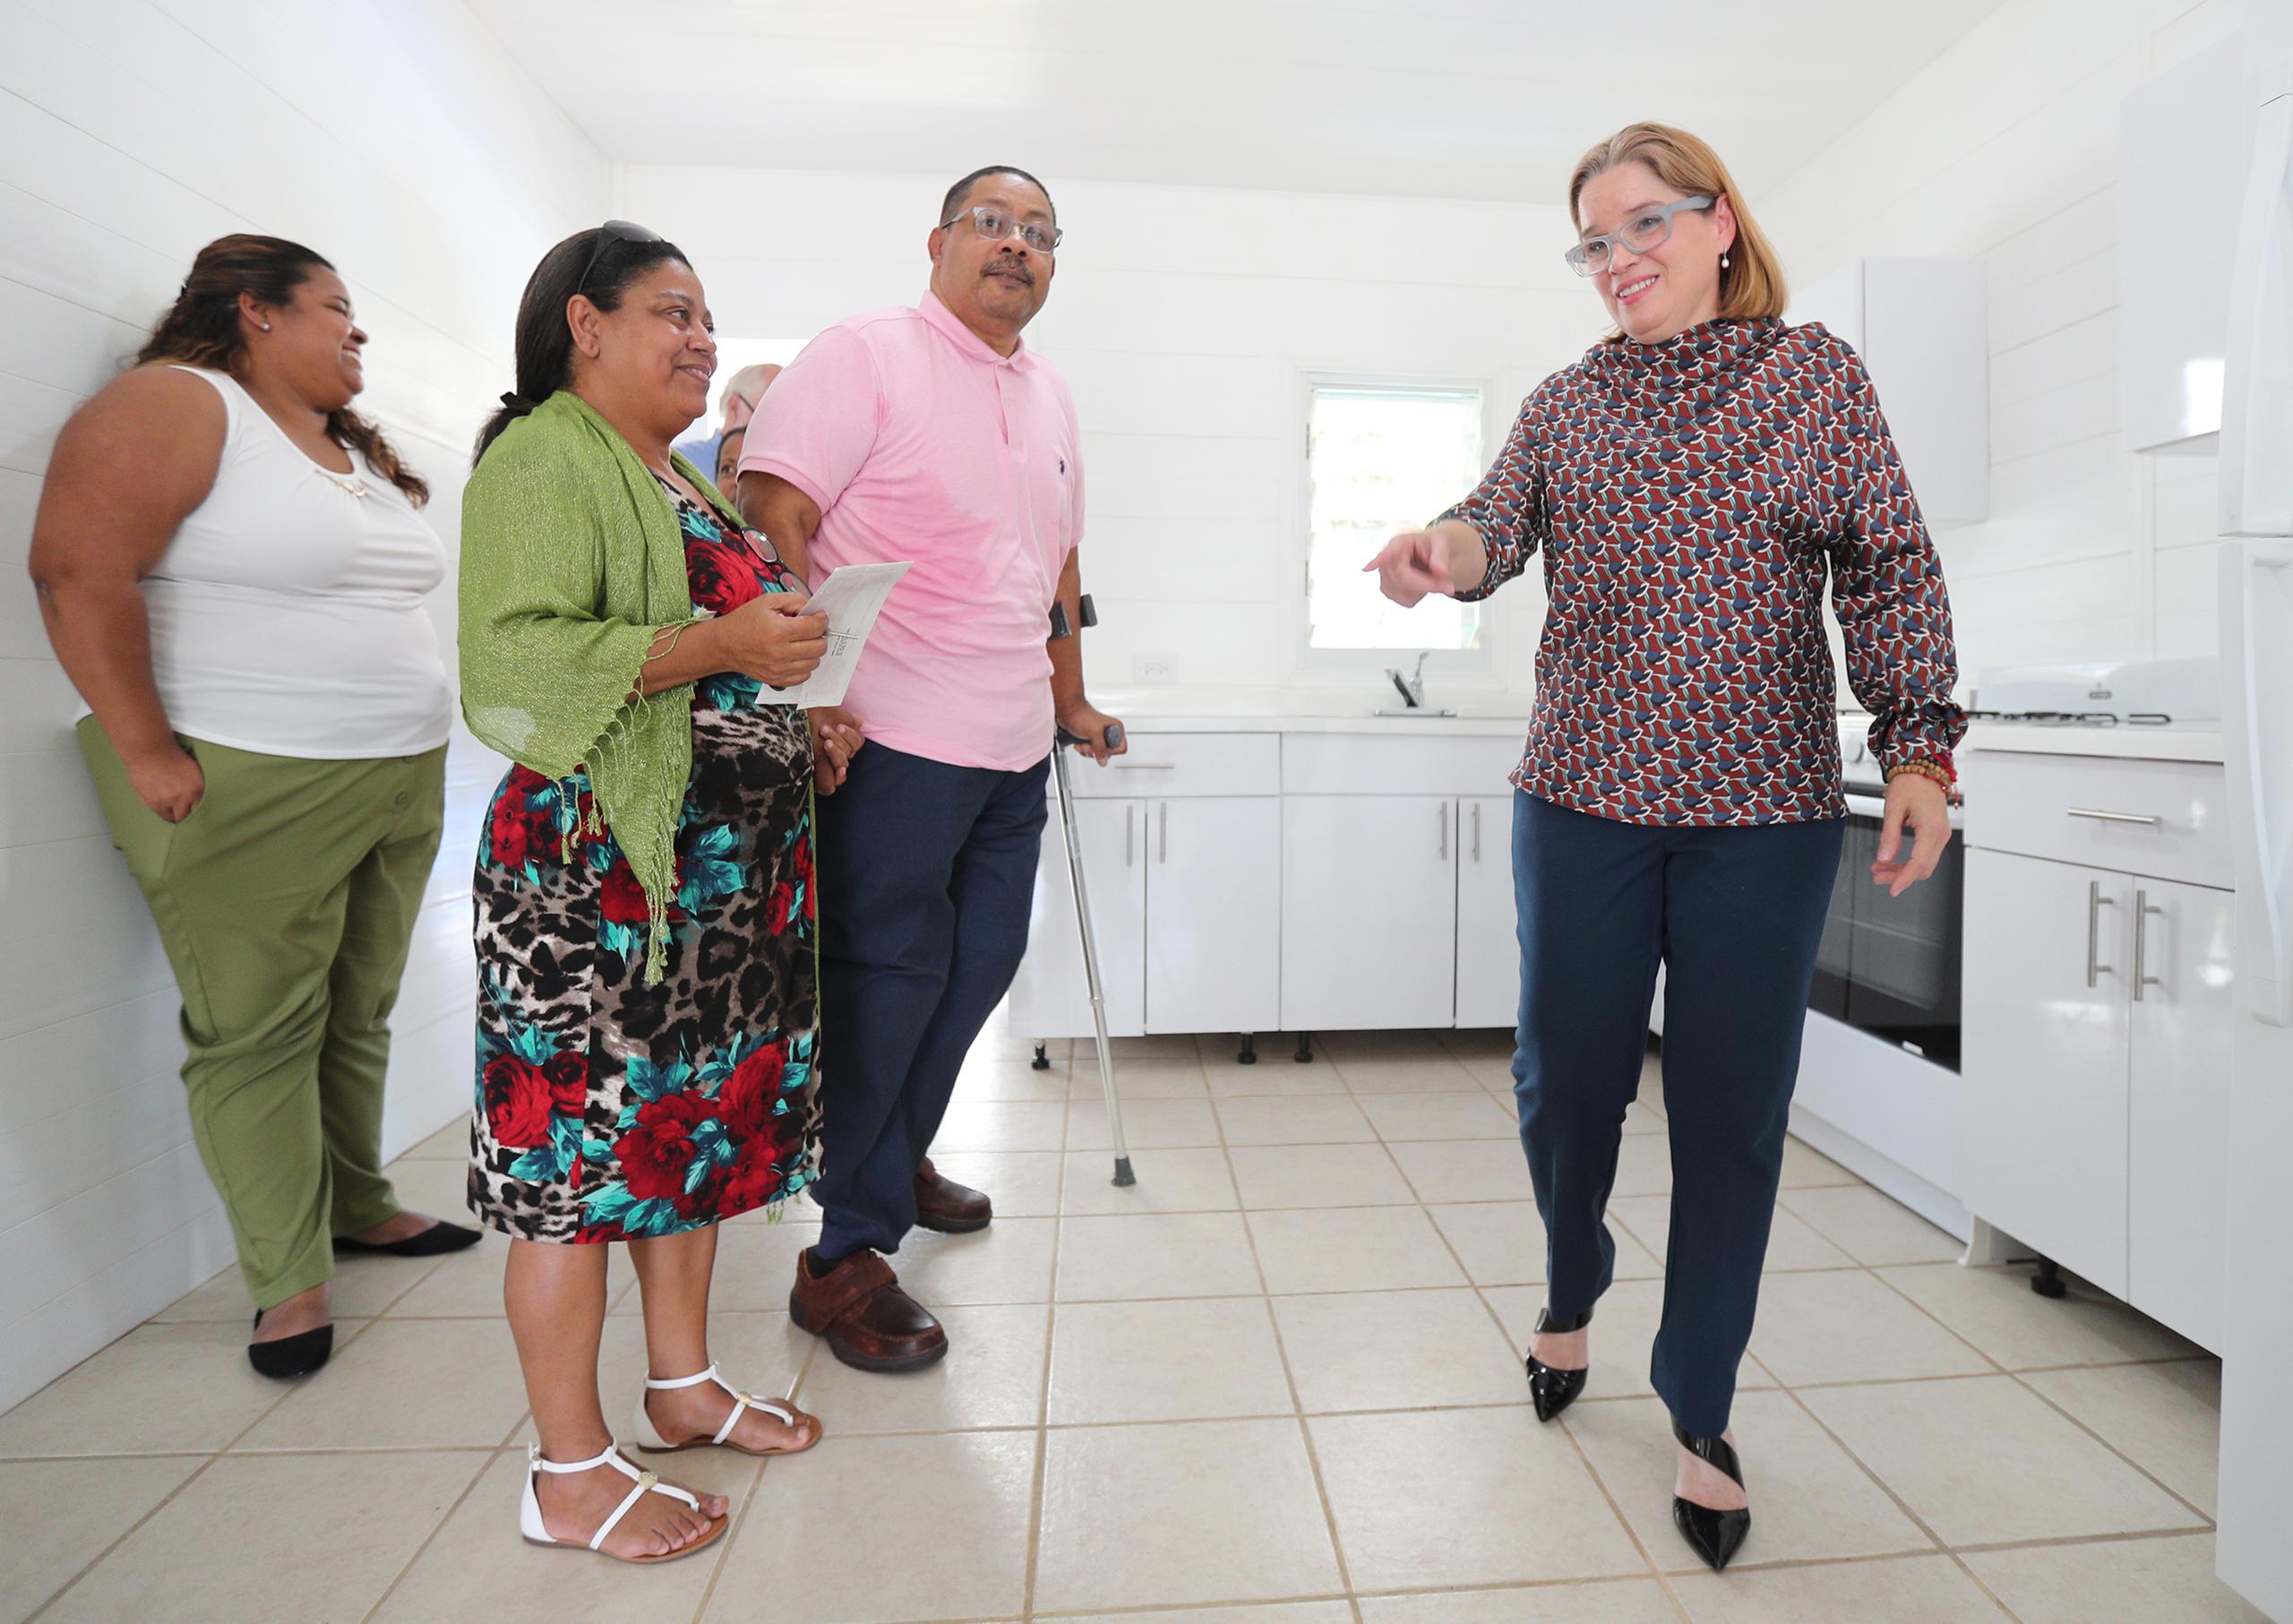 La alcaldesa de San Juan Carmen Yulín Cruz Soto entregó una residencia en PVC a una familia que se vio afectada tras el paso de los huracanes Irma y María. (juan.martinez@gfrmedia.com)